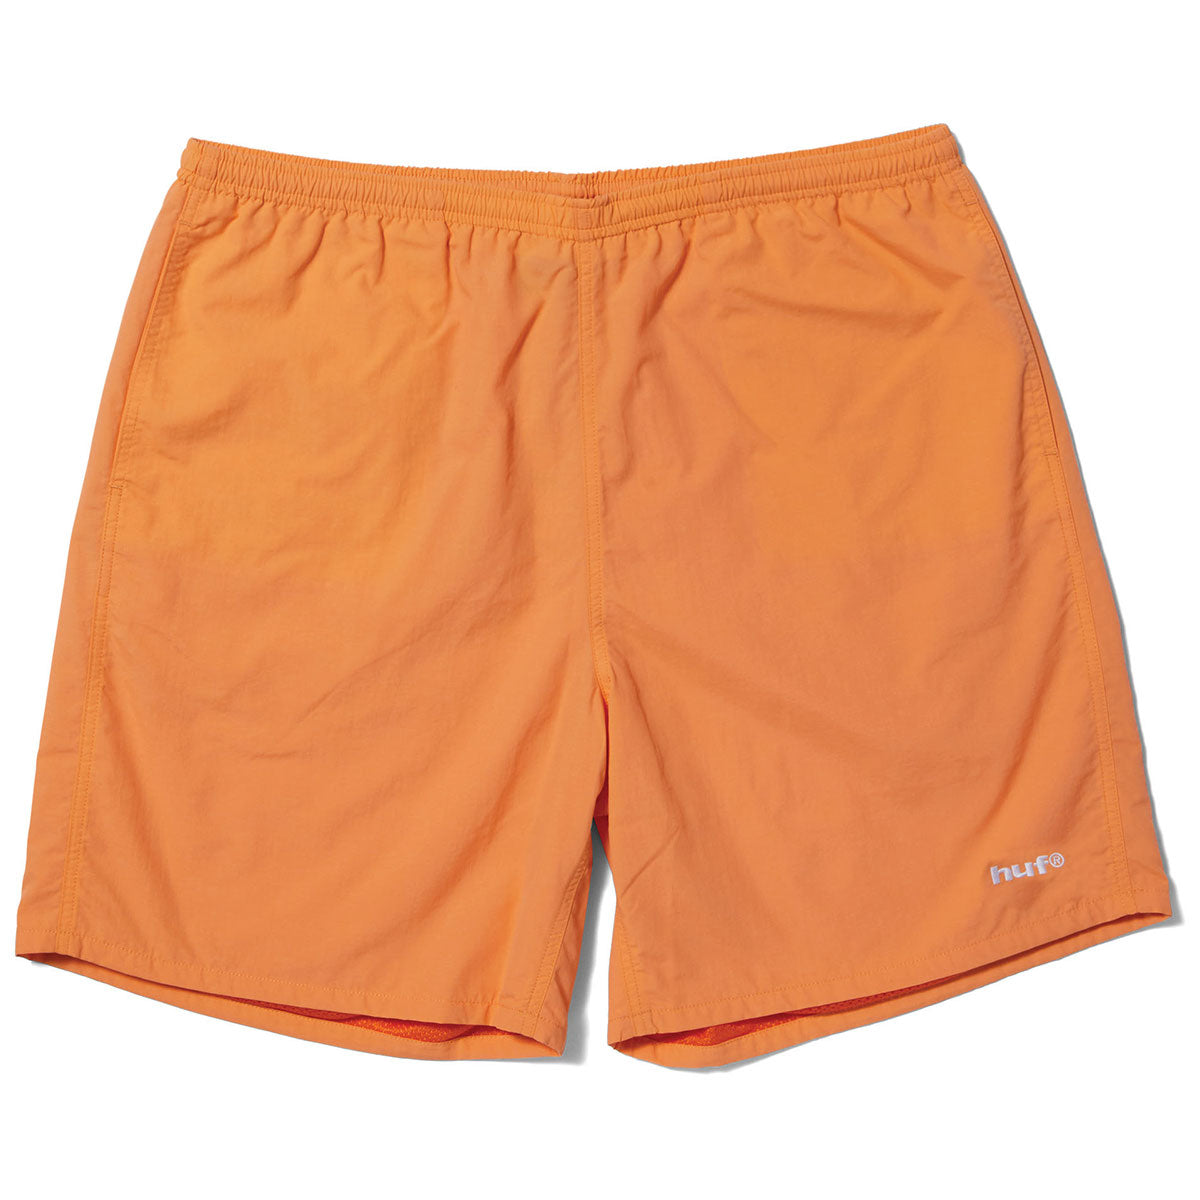 HUF Reservoir Dwr Easy Shorts - Tangerine image 1